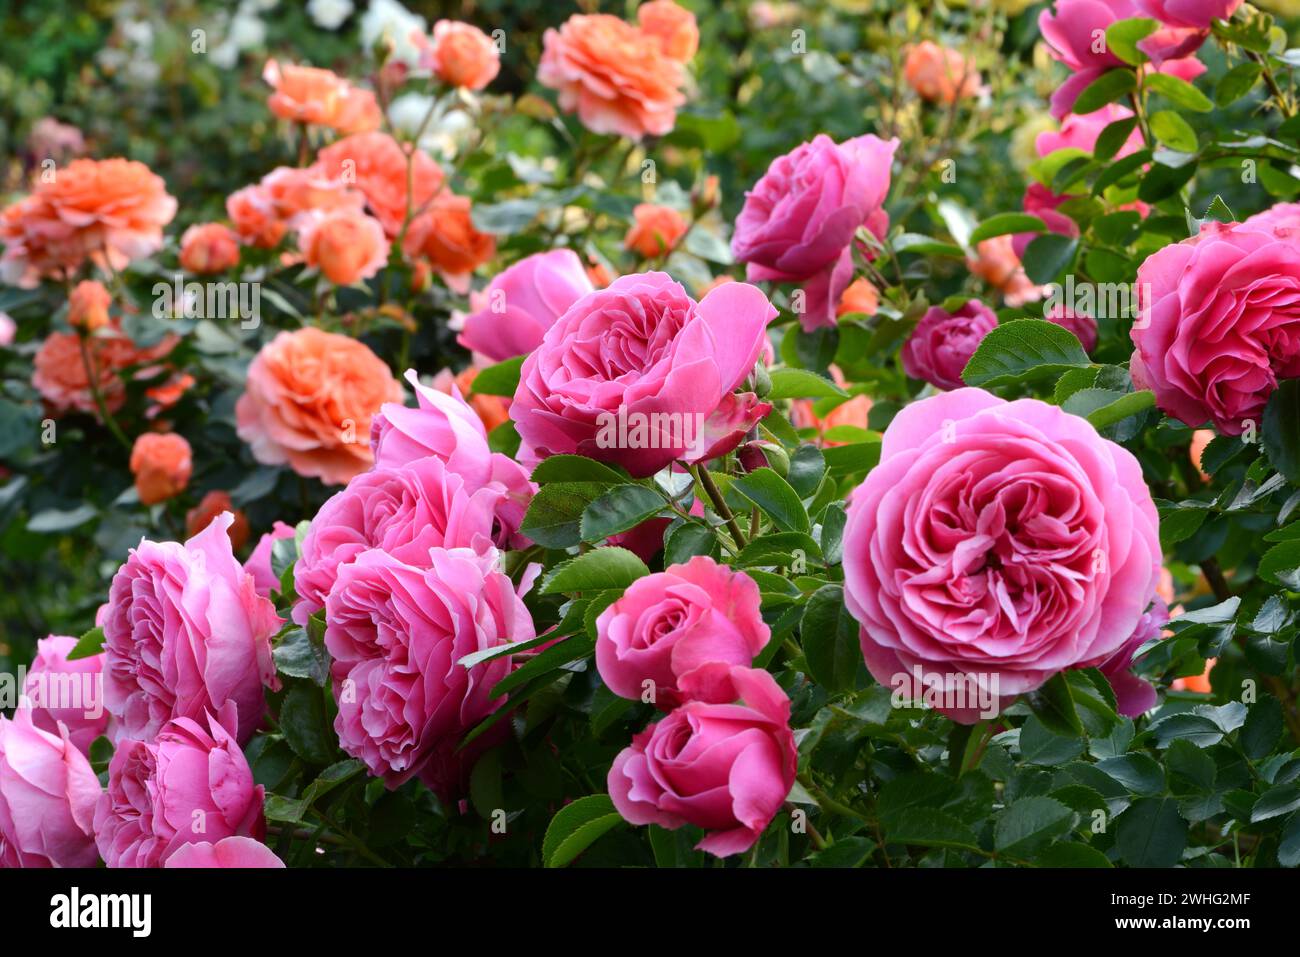 Rose garden Stock Photo